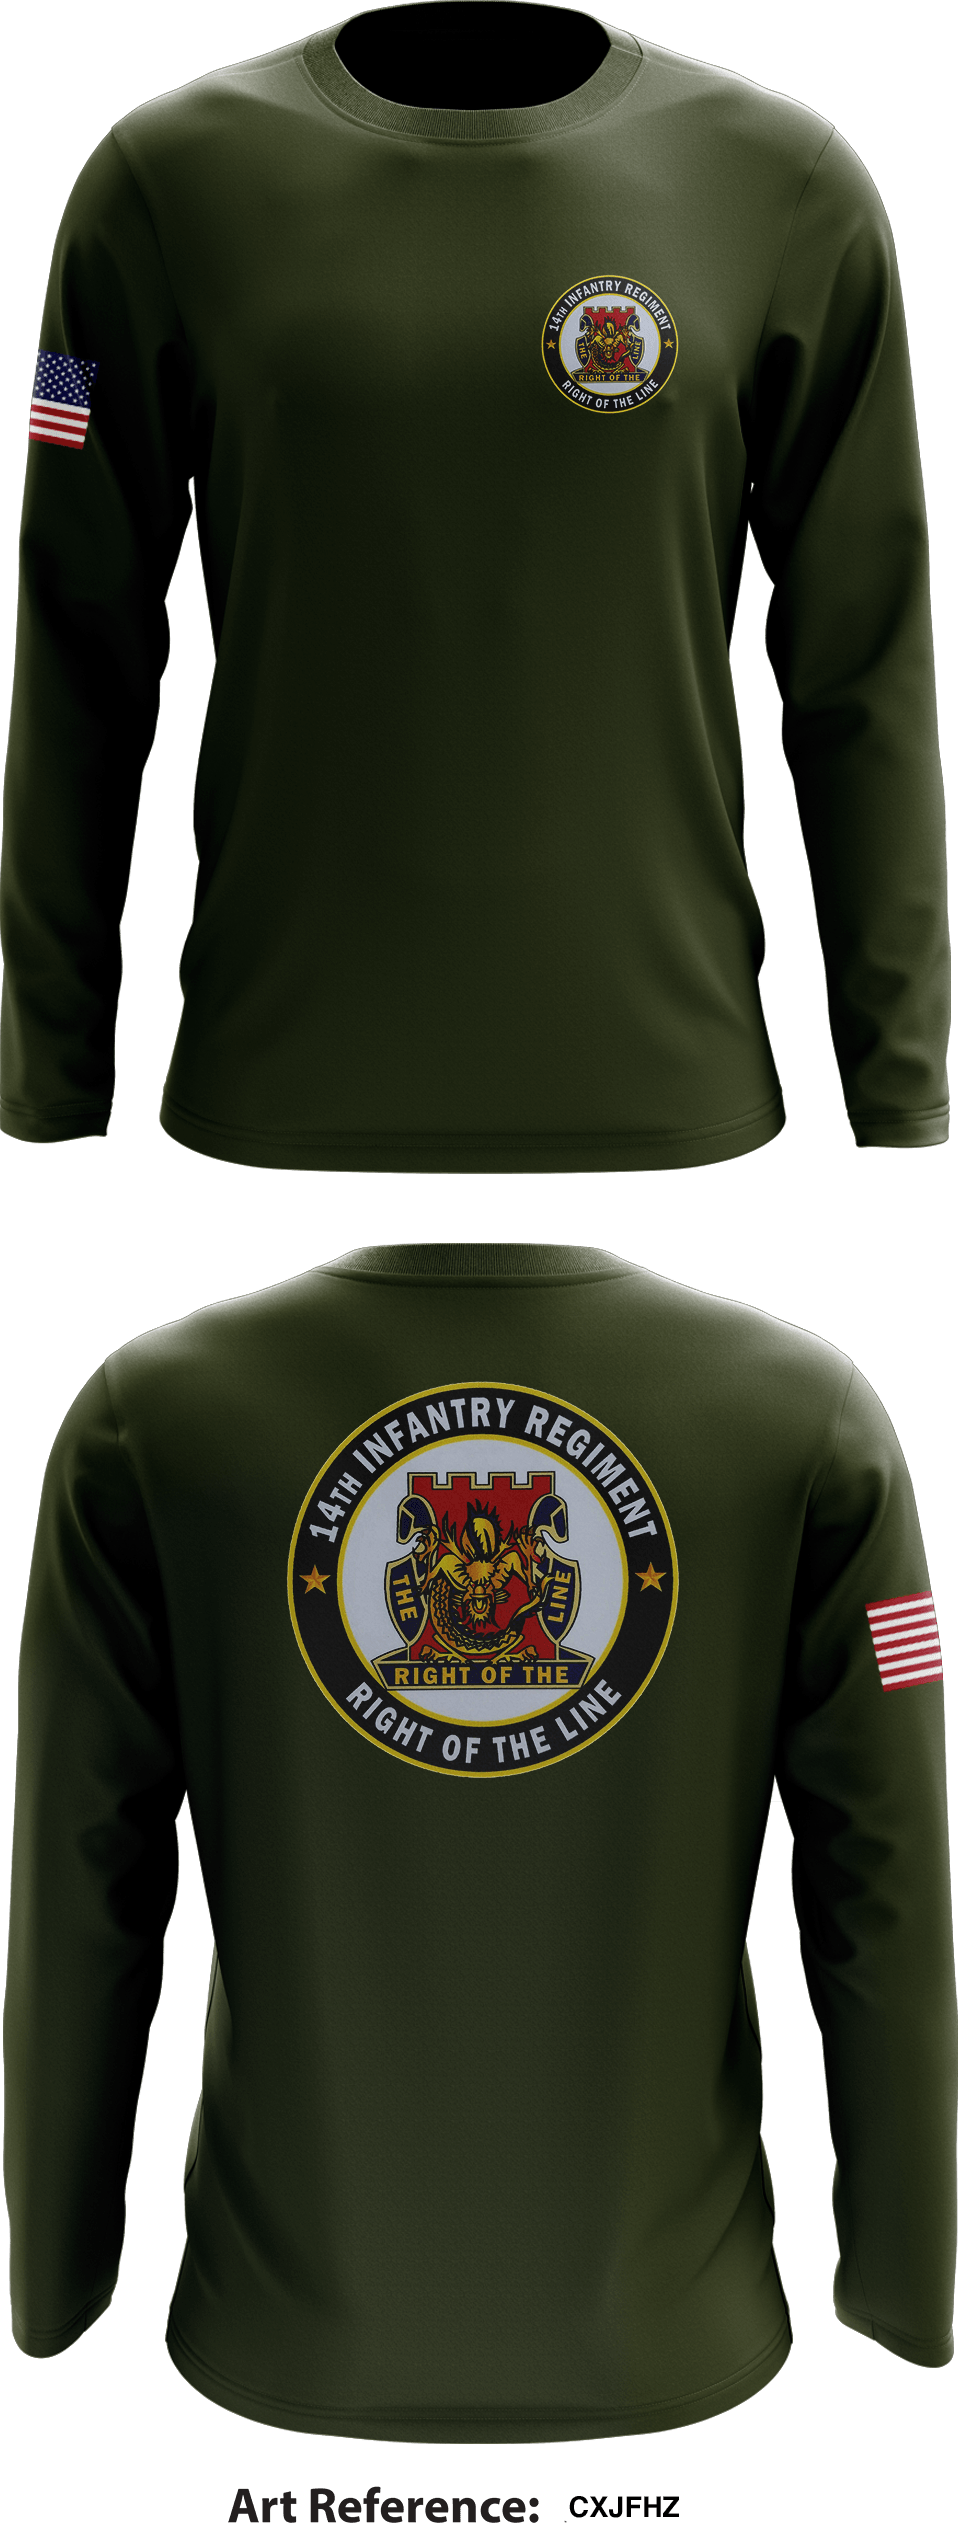 1-14 Infantry Battalion Store 1 Core Men's LS Performance Tee - CxjFhz